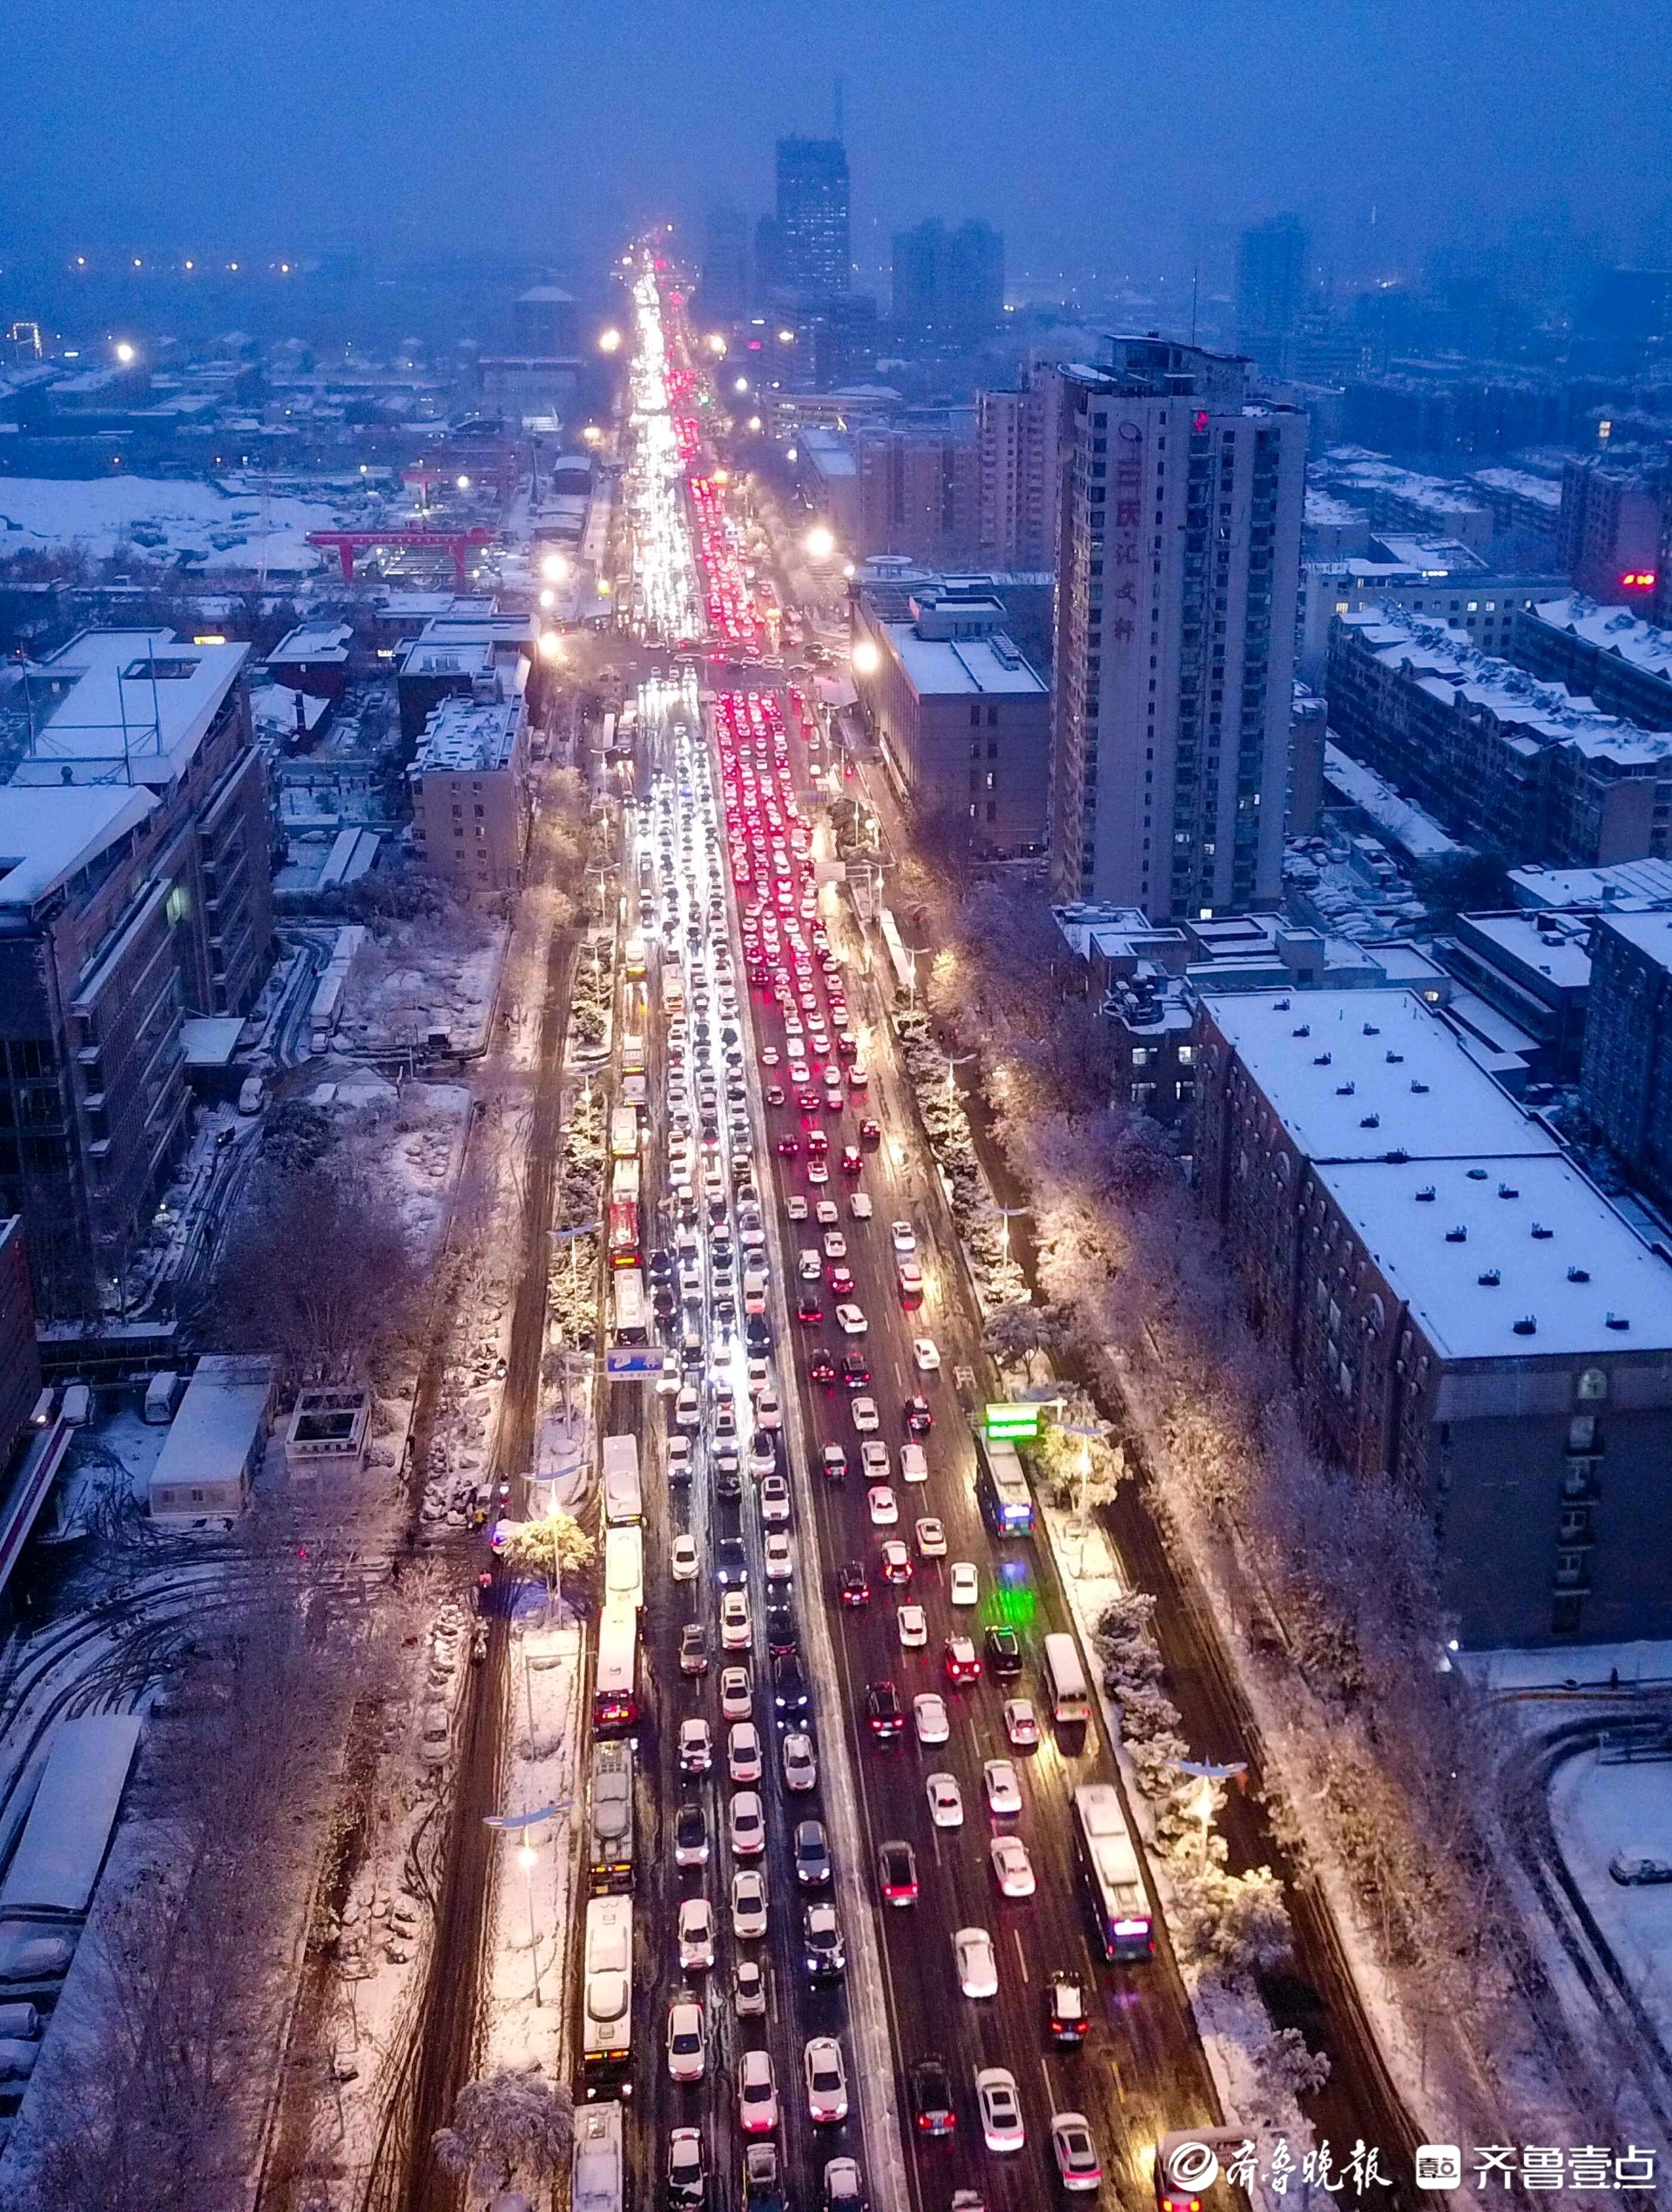 济南大雪,经十路出现交通拥堵,形成彩色车河